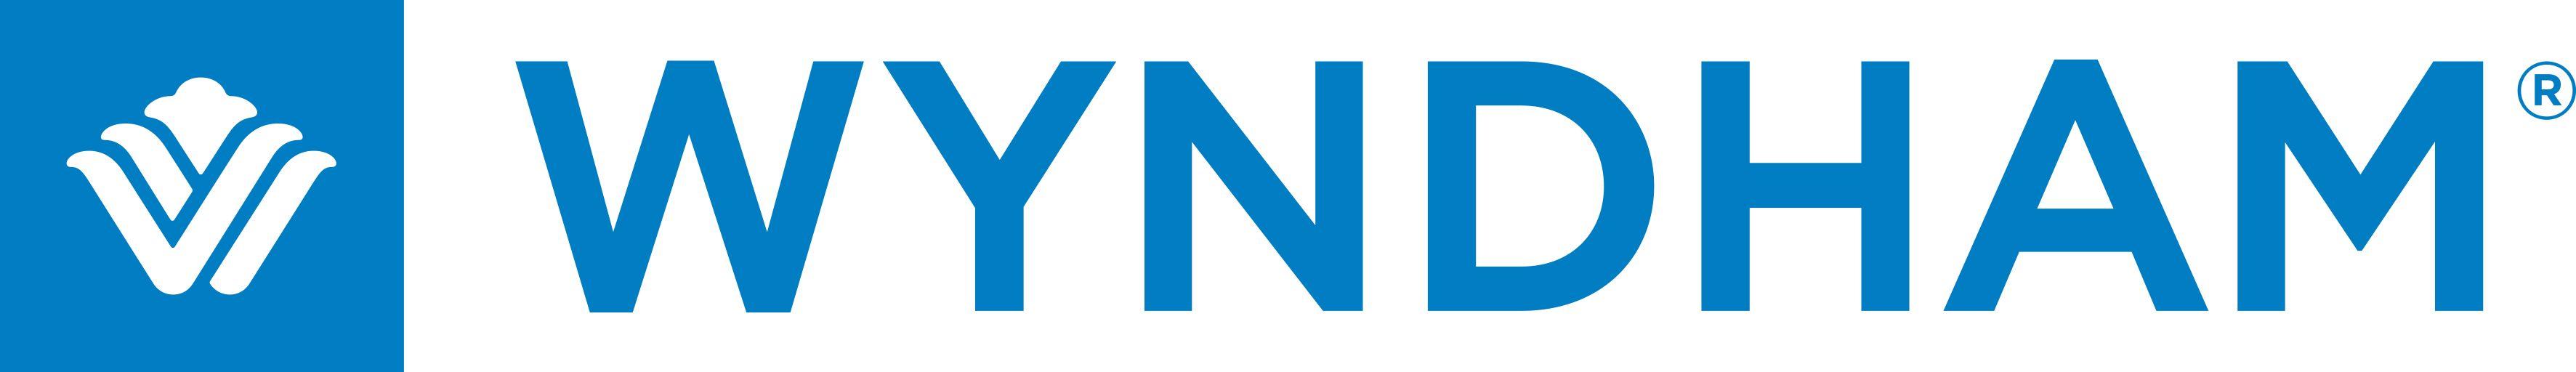 Wyndham Logo - Wyndham Hotels and Resorts Logo | Wyndham Destinations